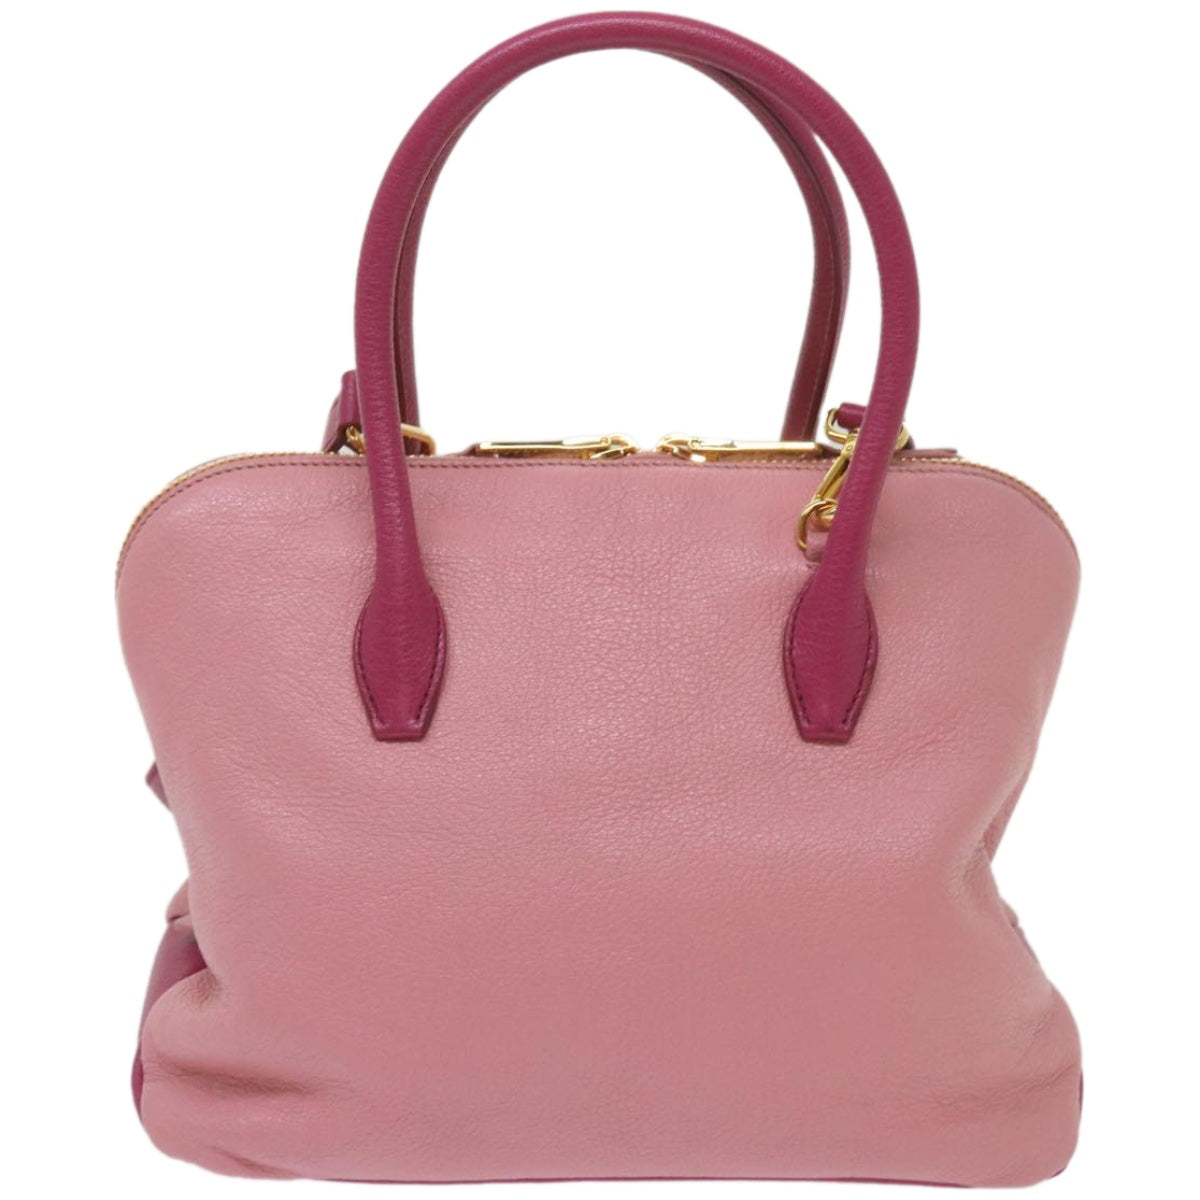 Miu Miu Hand Bag Leather 2way Pink Auth yk10851